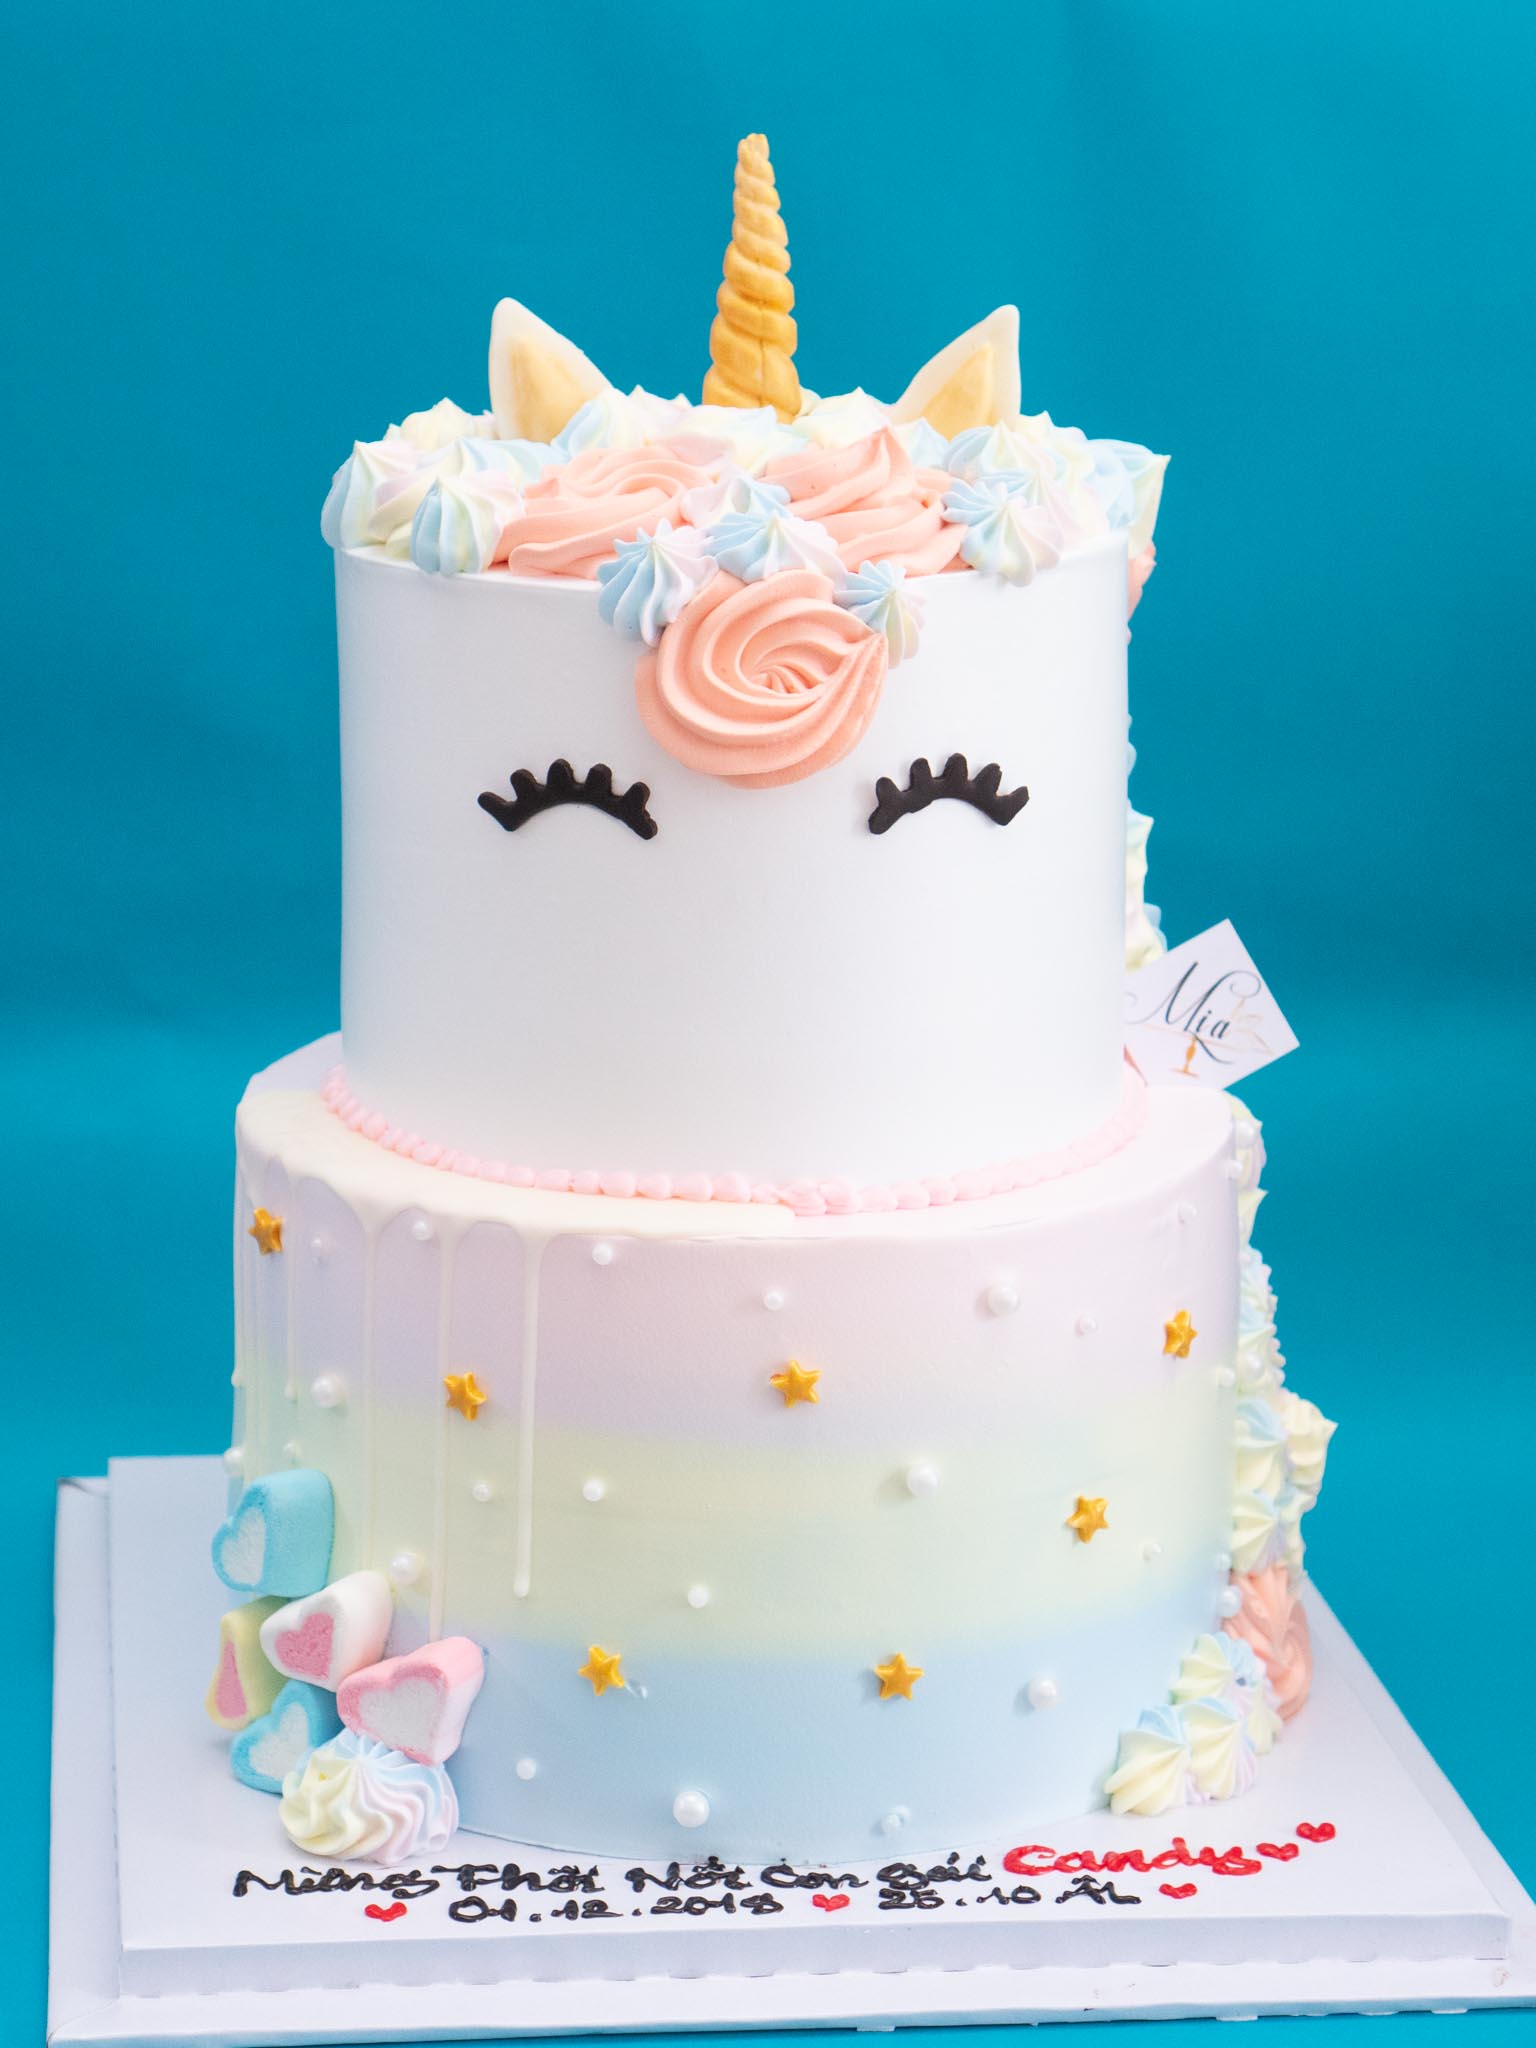 bánh sinh nhật unicorn